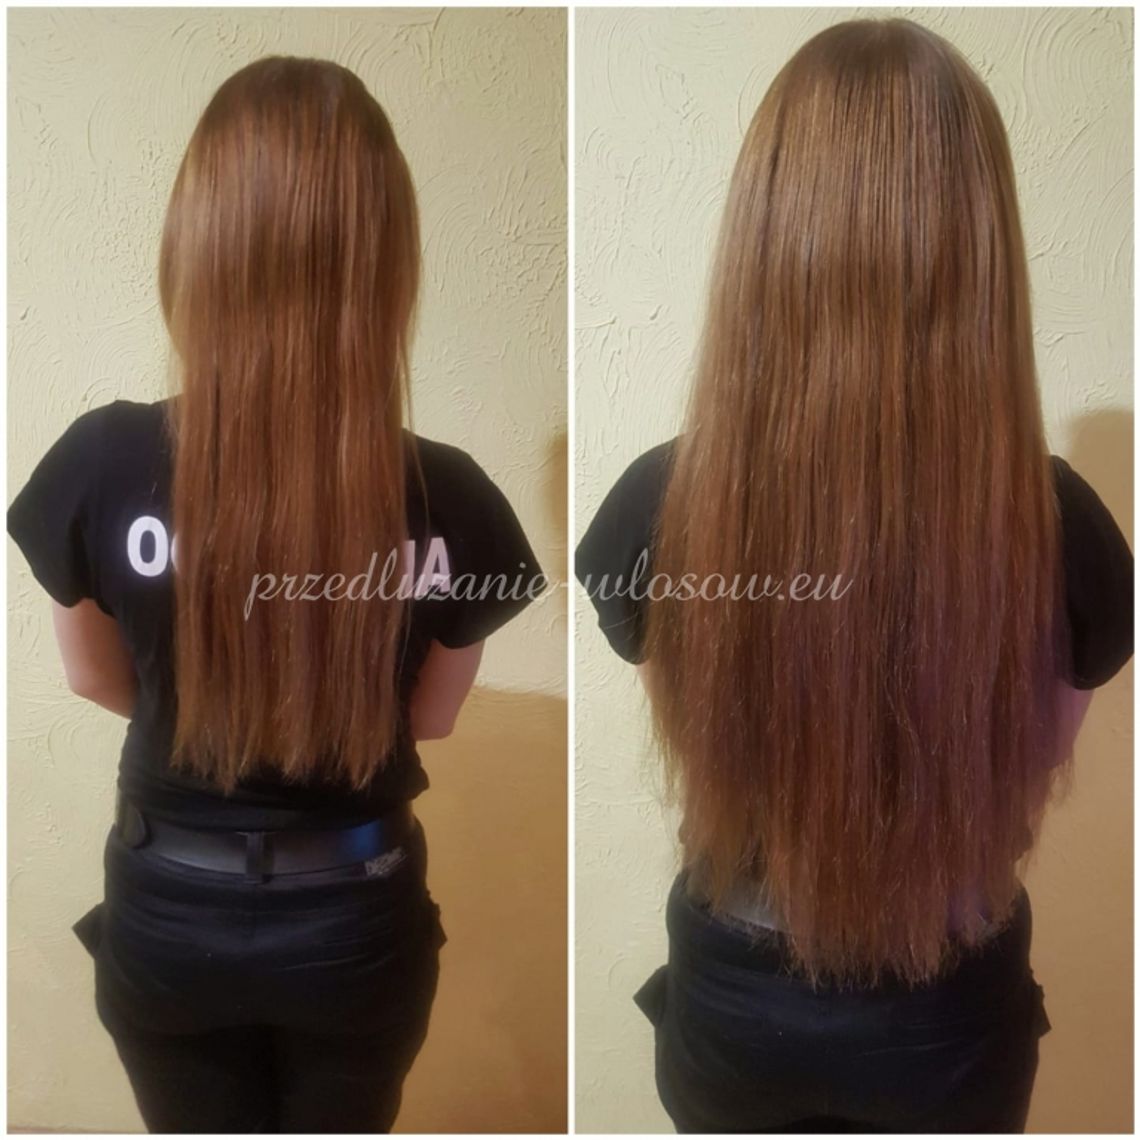 Anna Gierczycka - Przedłużanie włosów